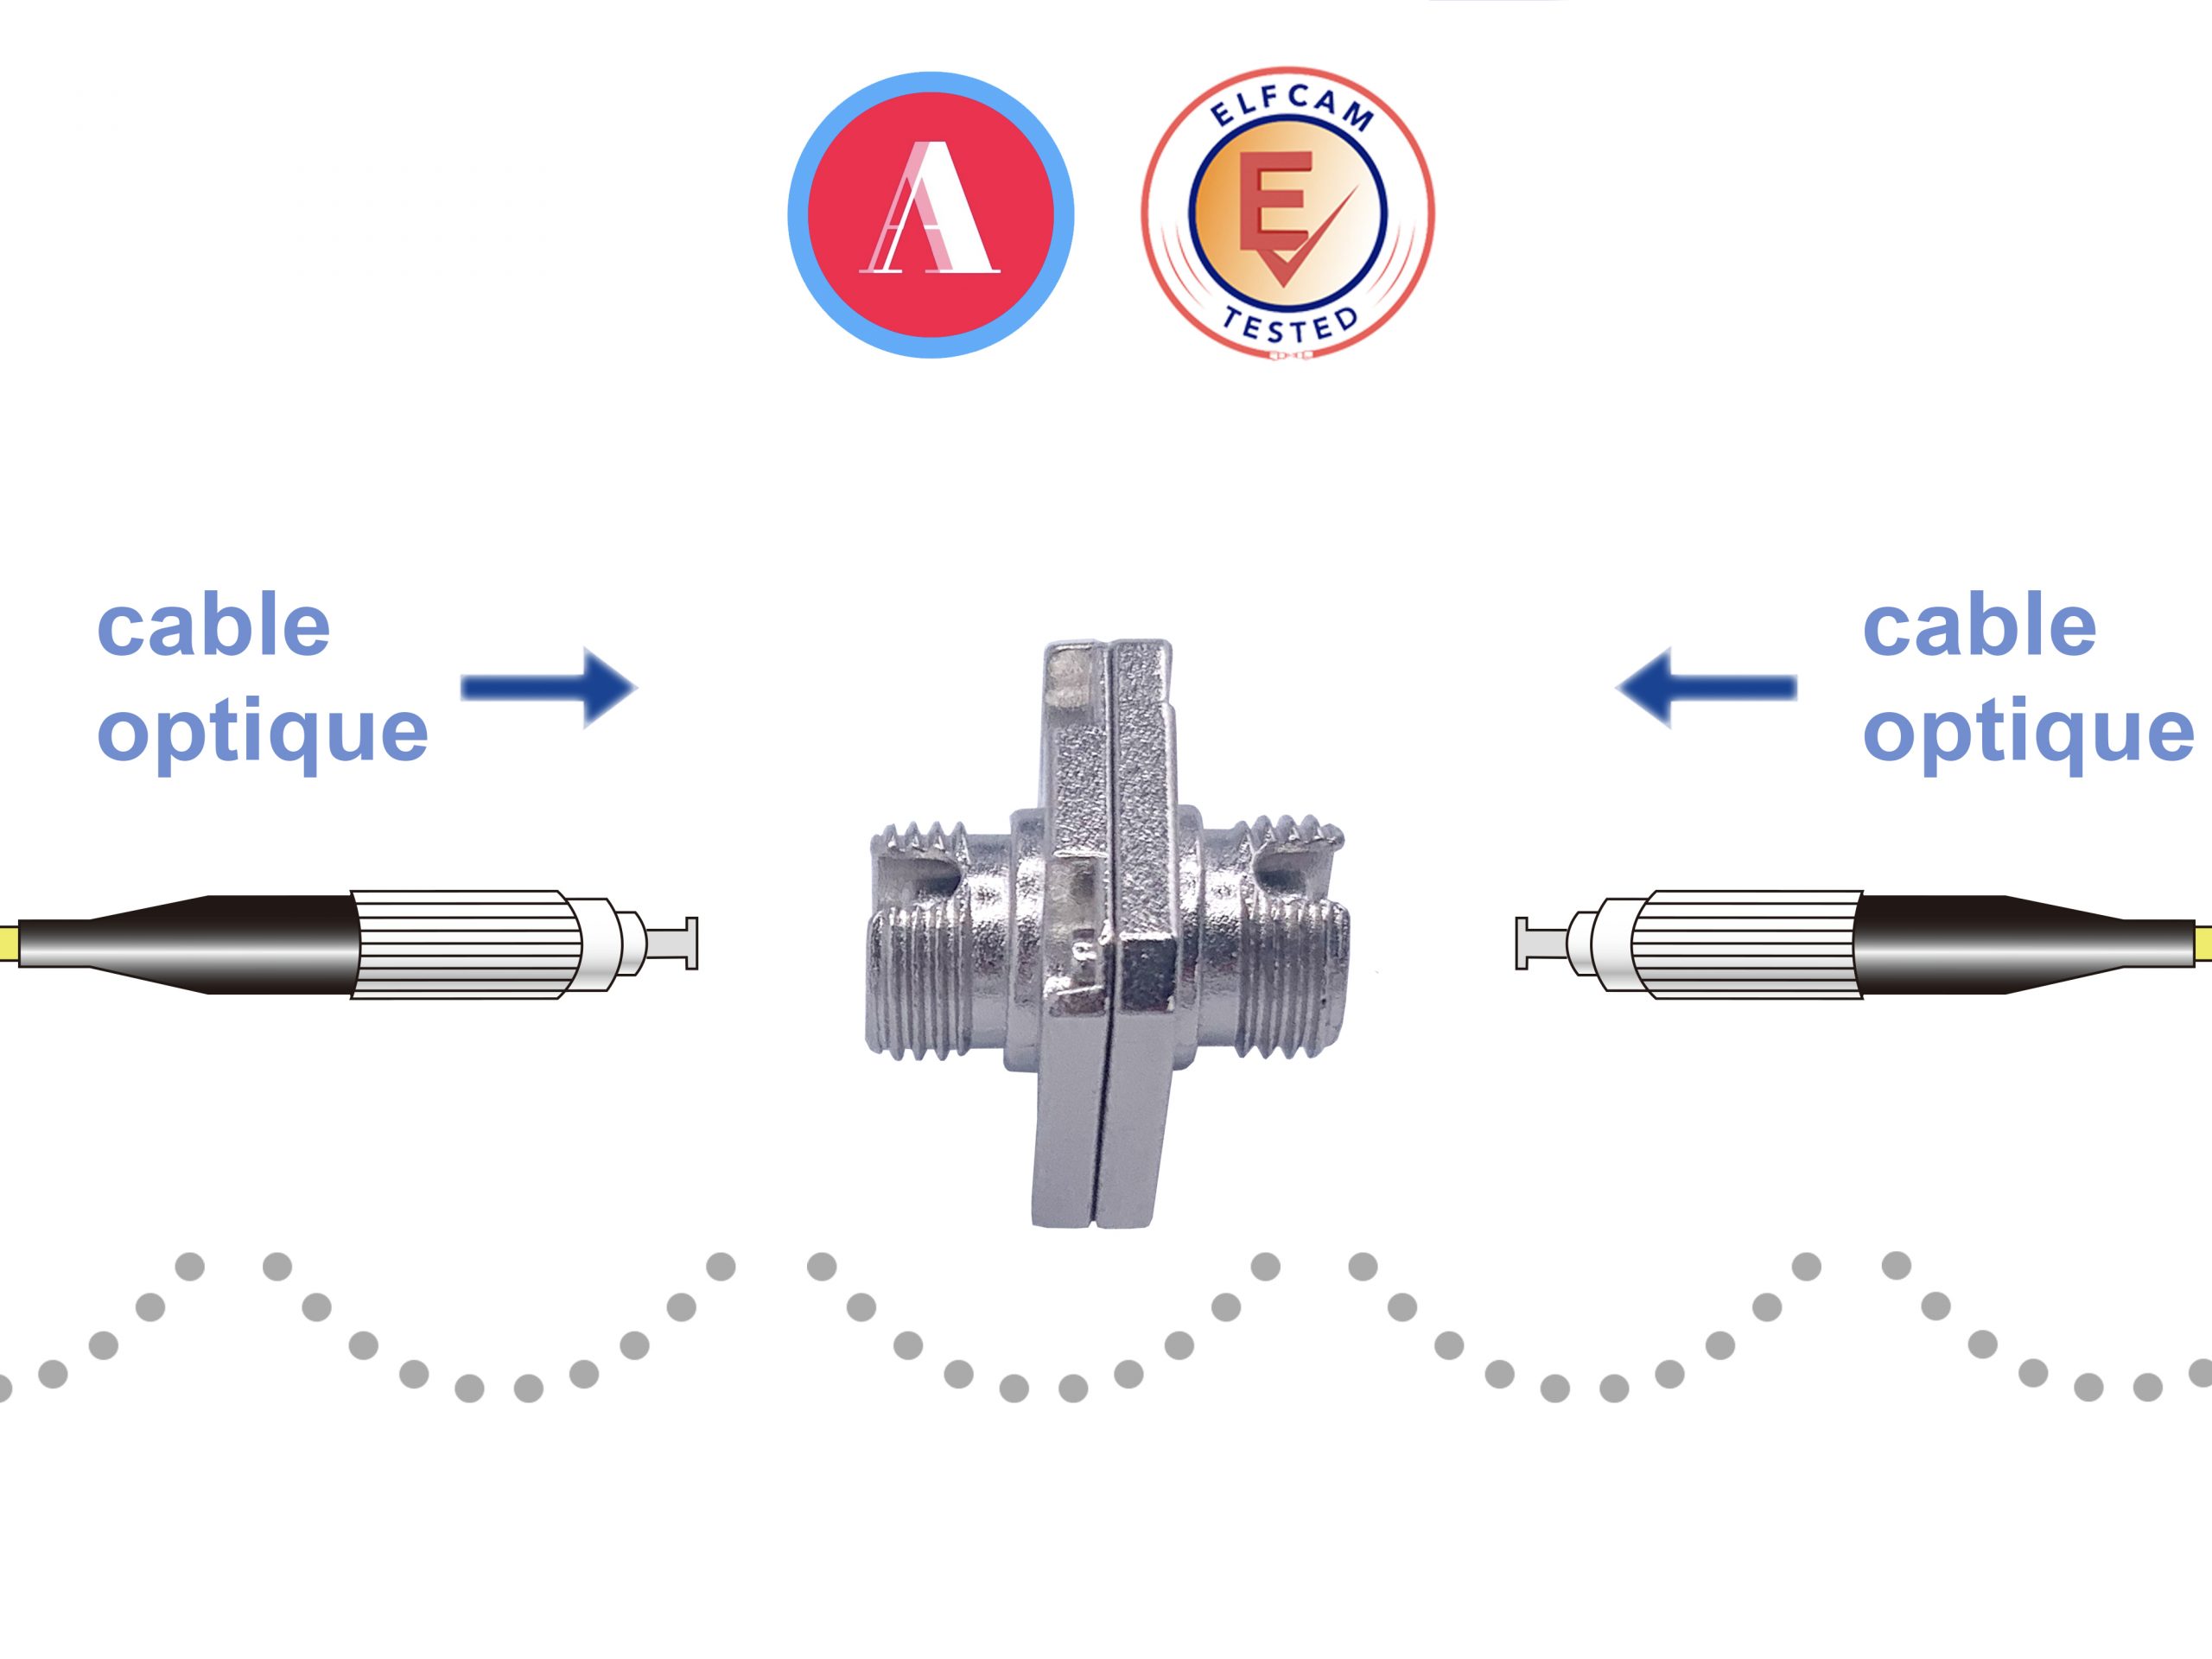 Testeur de fibre optique - Évaluation de la puissance de la fibre optique -  Connecteur FC - Étanche IP65 - Arrêt automatique - EN REFURB